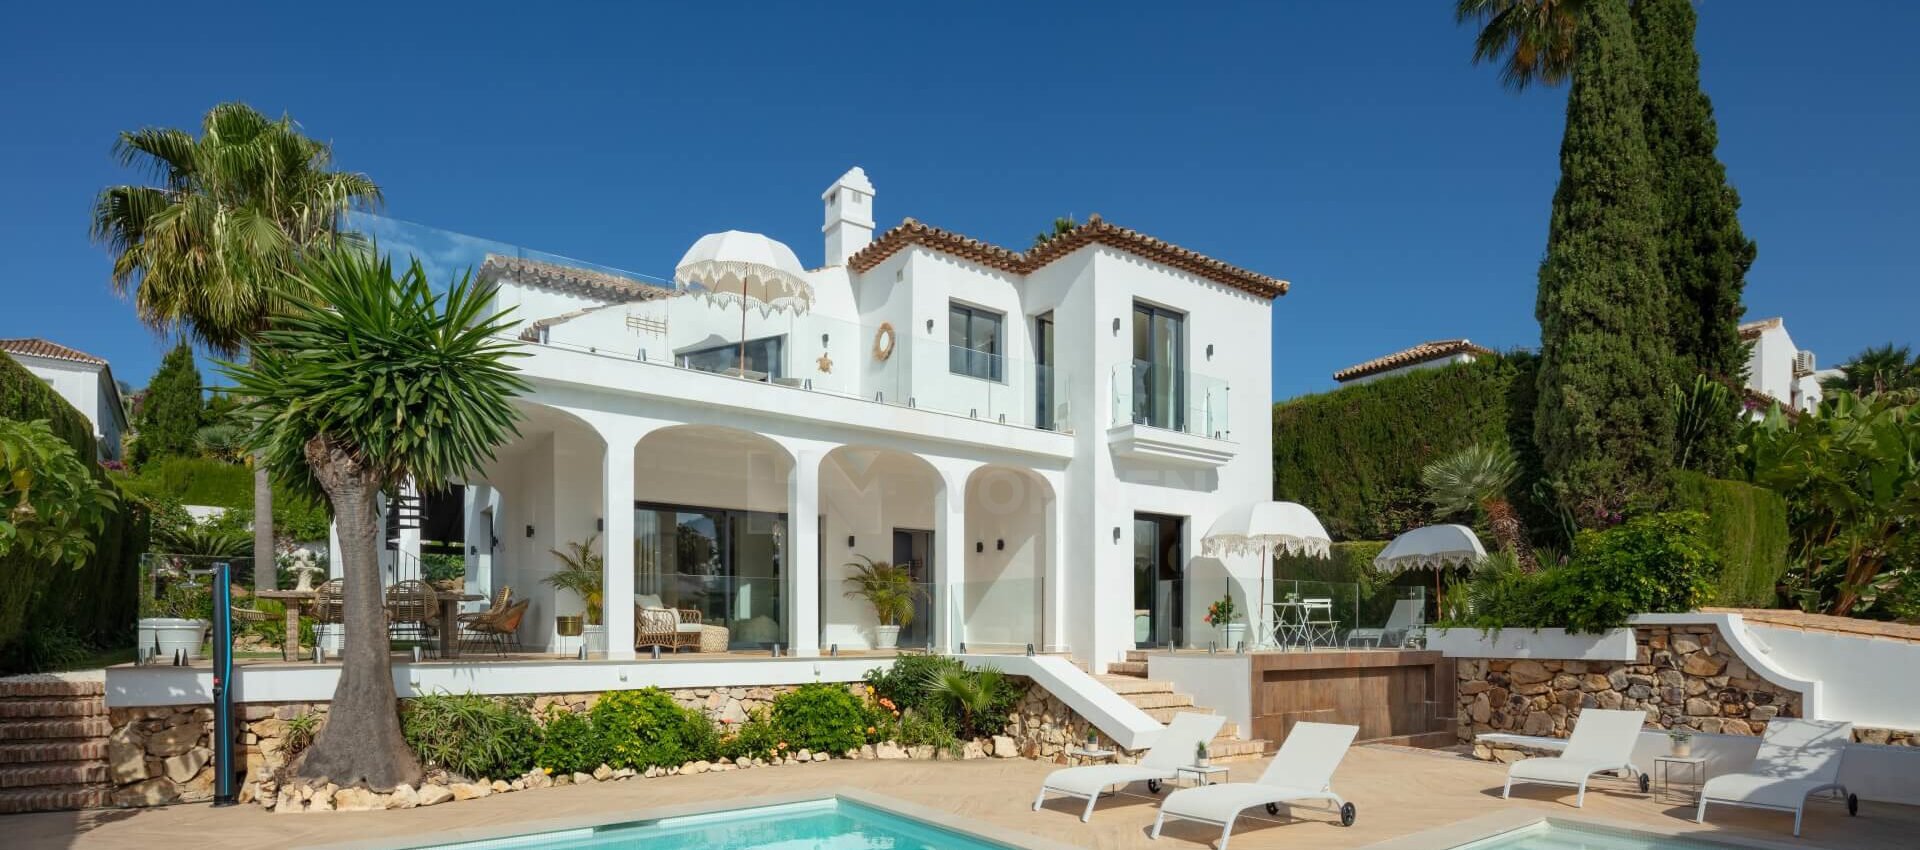 Villa andaluza clásica y moderna en Nueva Andalucía Marbella